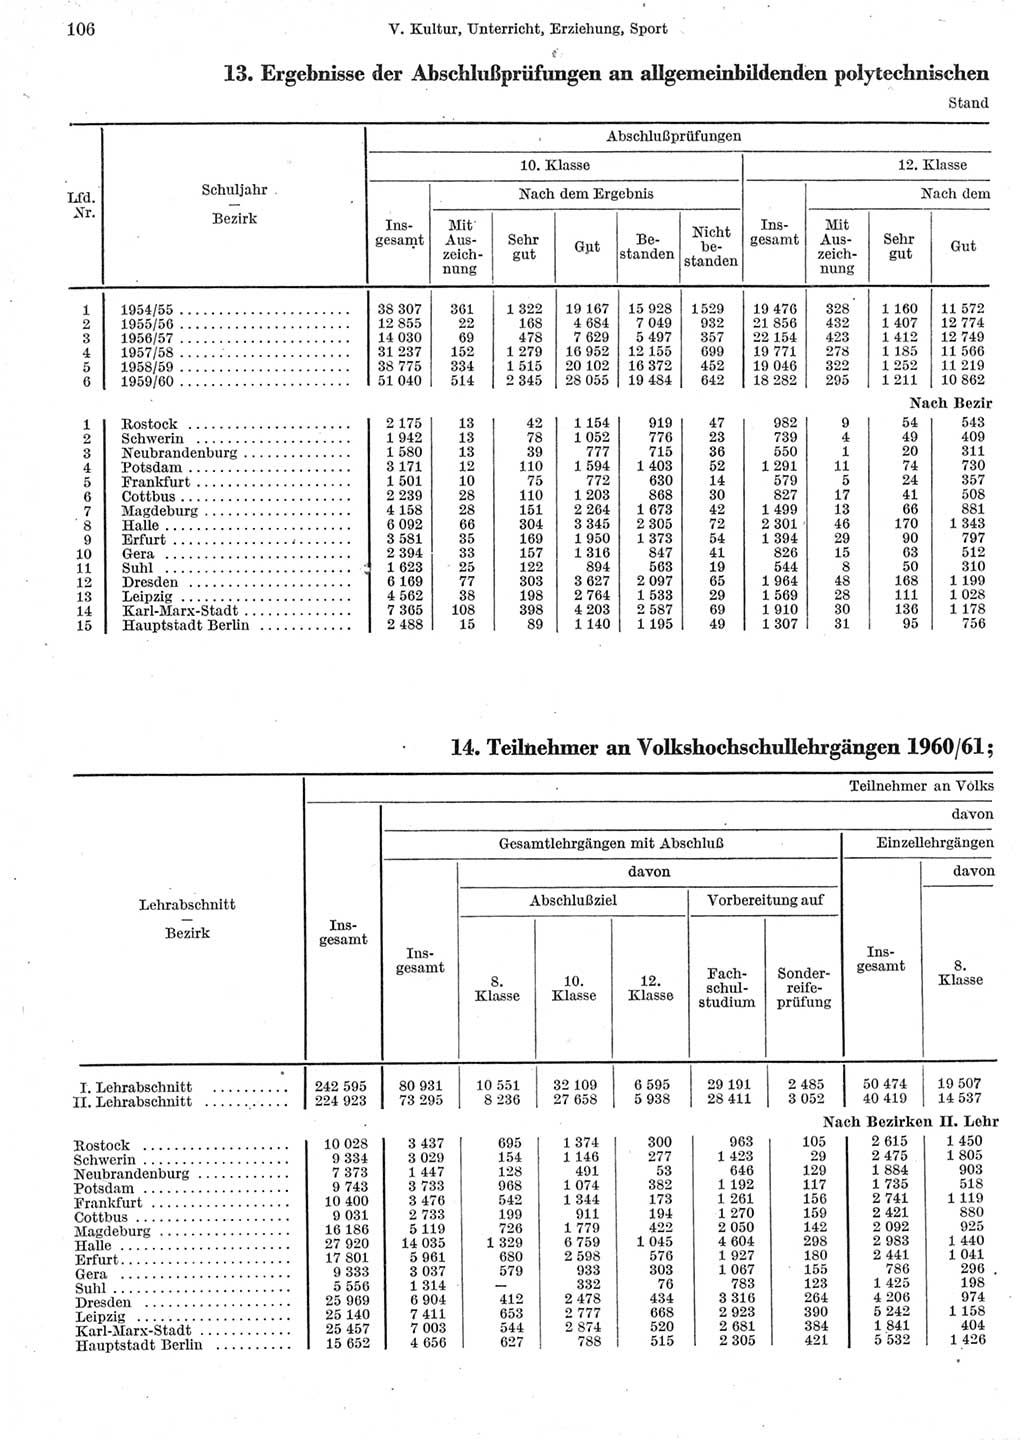 Statistisches Jahrbuch der Deutschen Demokratischen Republik (DDR) 1962, Seite 106 (Stat. Jb. DDR 1962, S. 106)